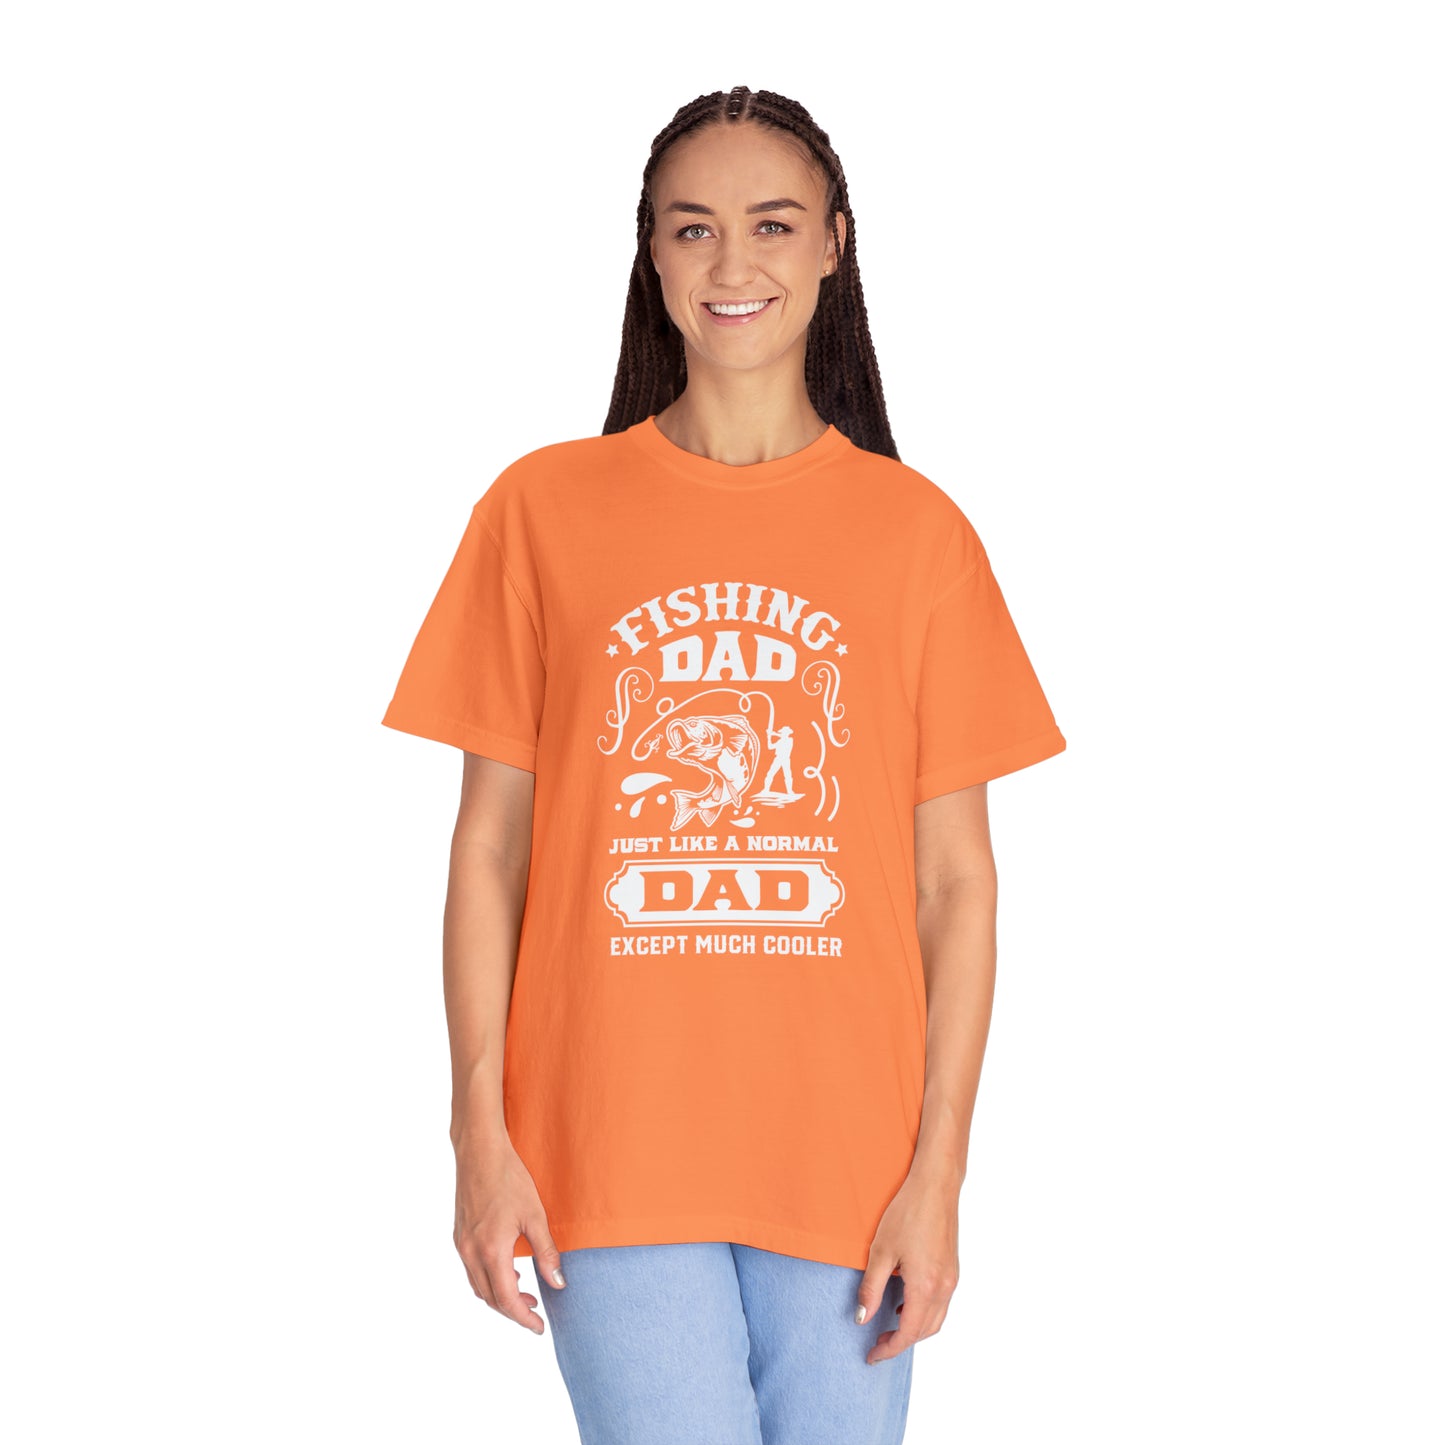 Reel Cool Grandpa: abraza el aire libre con estilo con esta camiseta